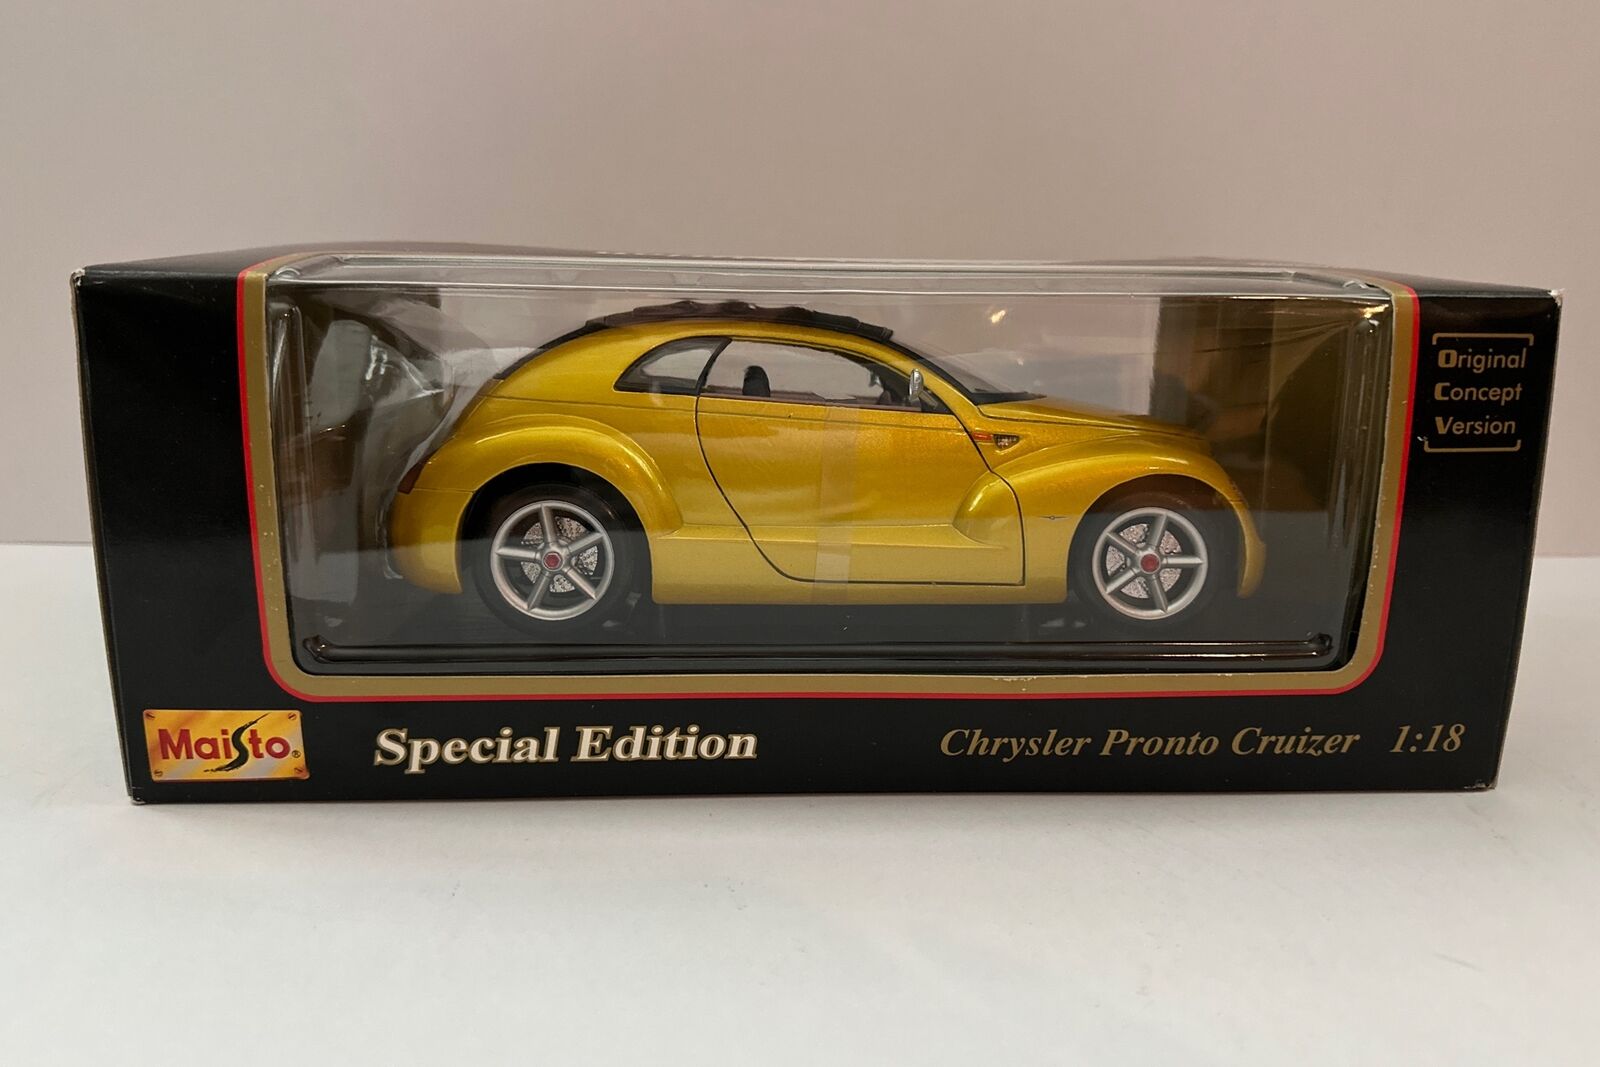 Chrysler Pronto Cruizer - Yellow Maisto Special Edition 1:18 - Concept Car